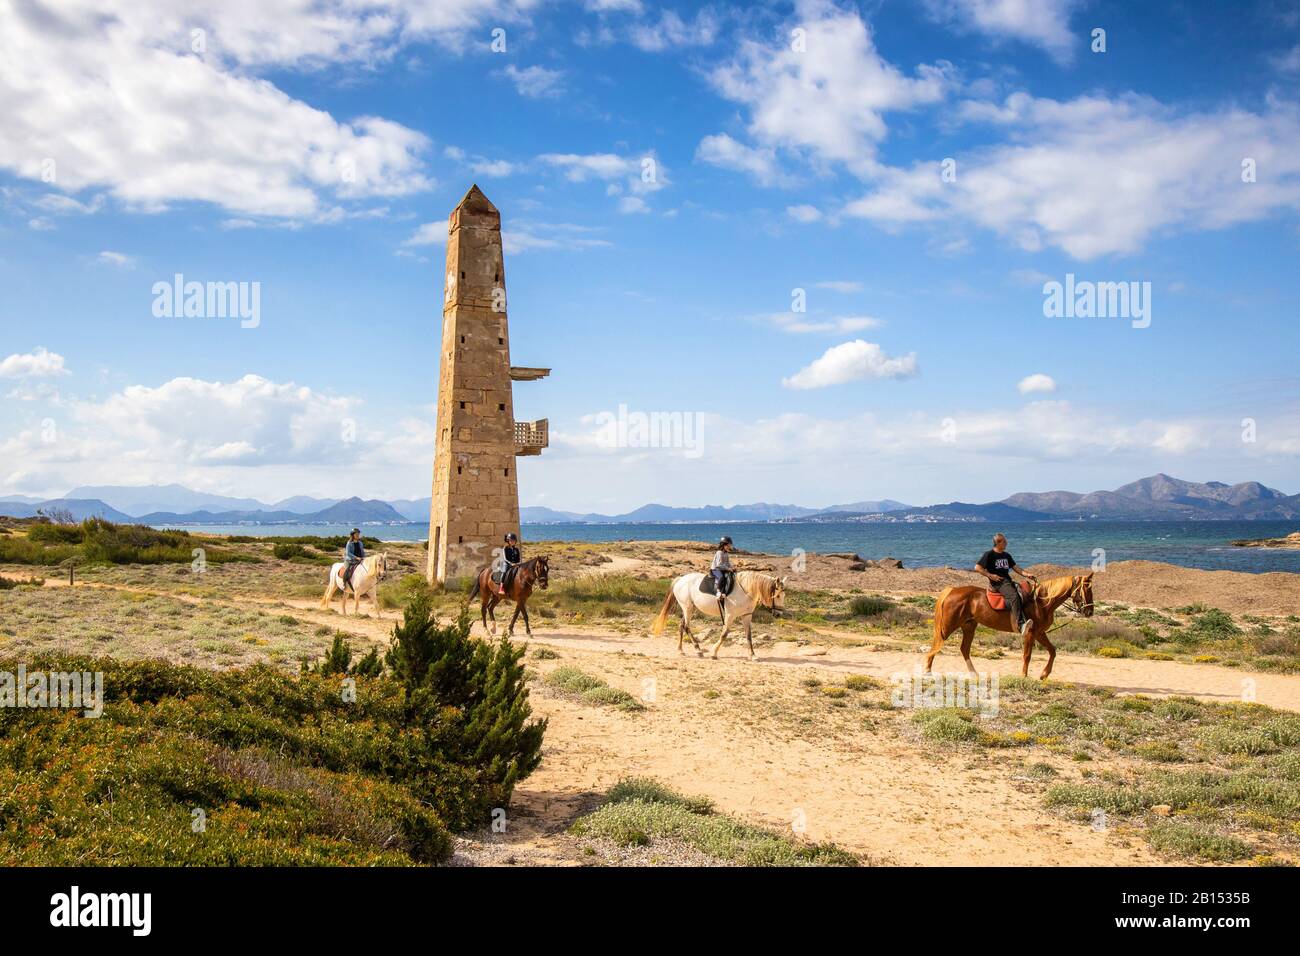 Antica torre di guardia sul mare e gruppo equestre, Isole Baleari, Maiorca, Son Real, Can Picafort Foto Stock